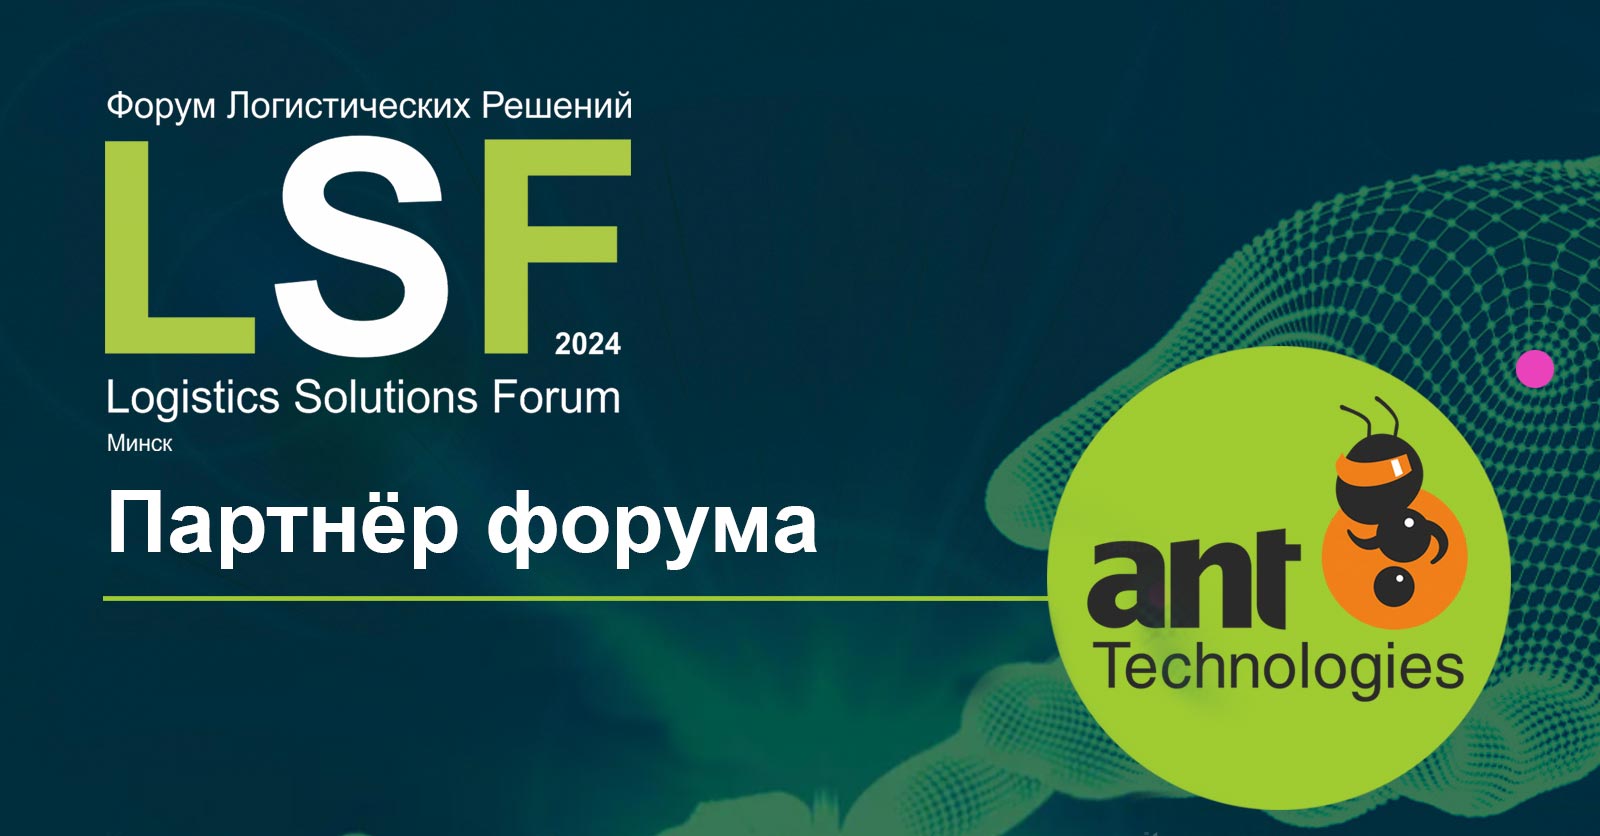 29 мая приглашаем на Форум Логистических решений LSF в Минске